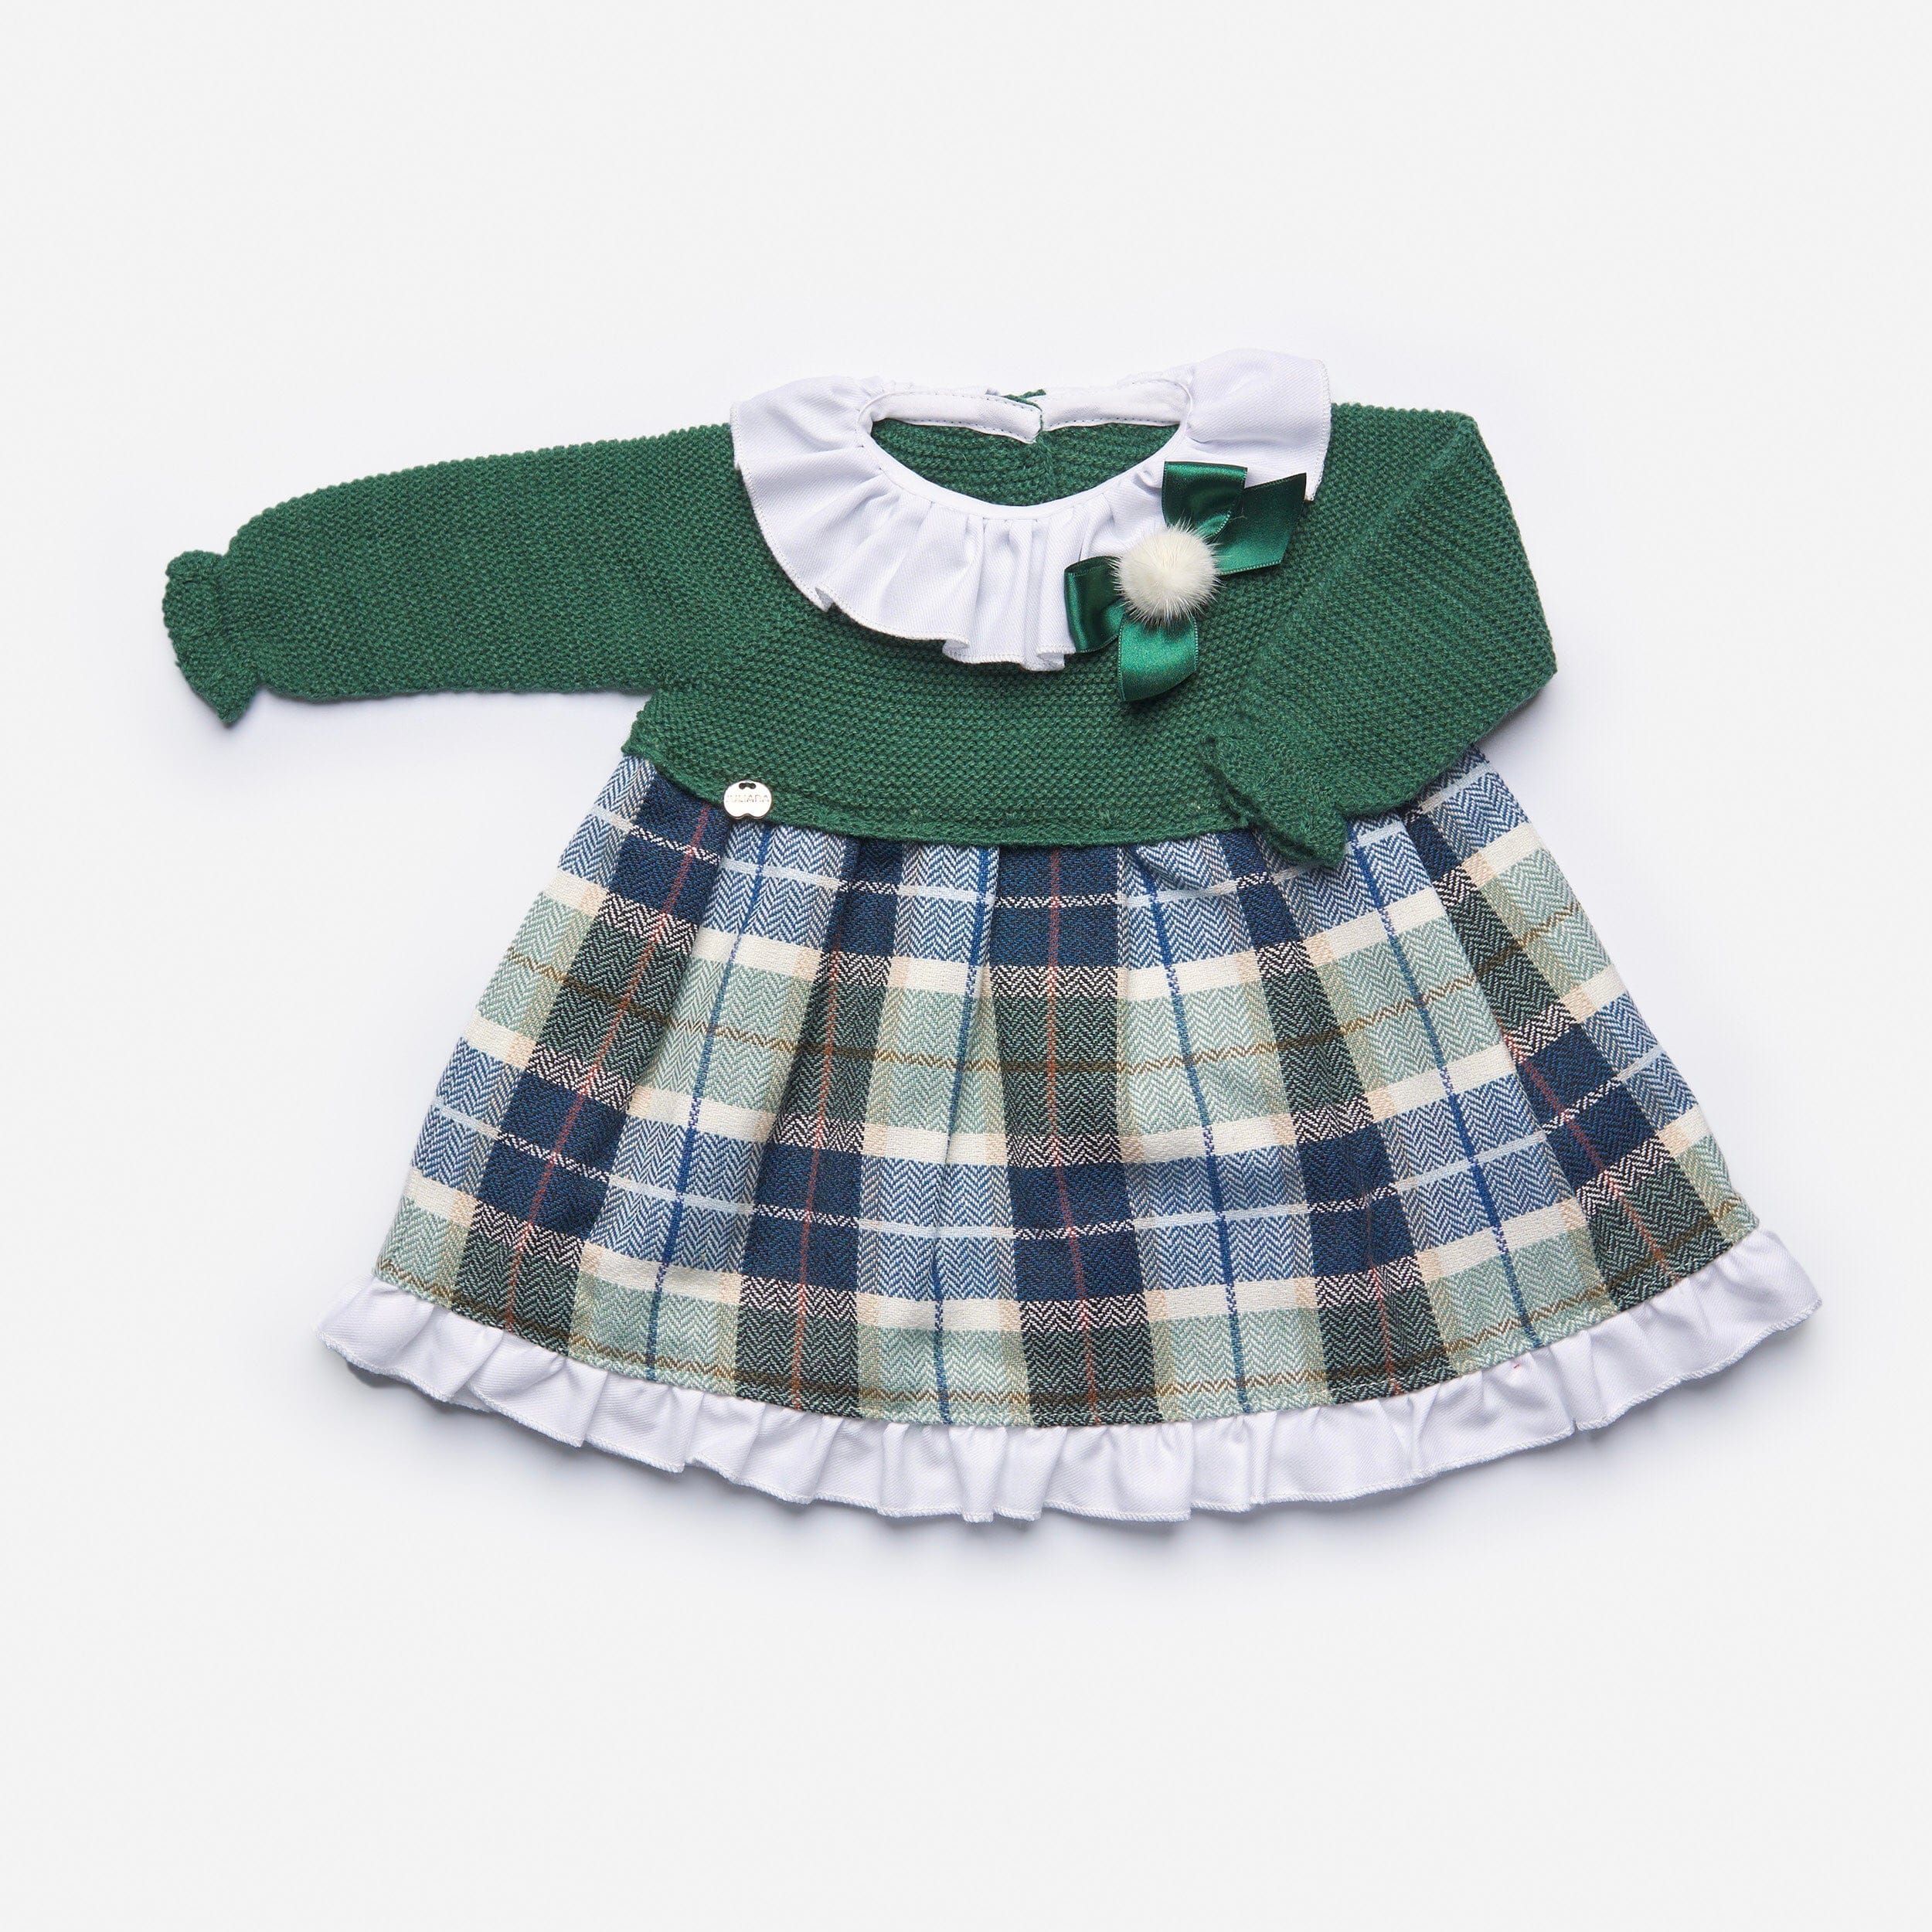 Juliana - Check Knit Dress - Green